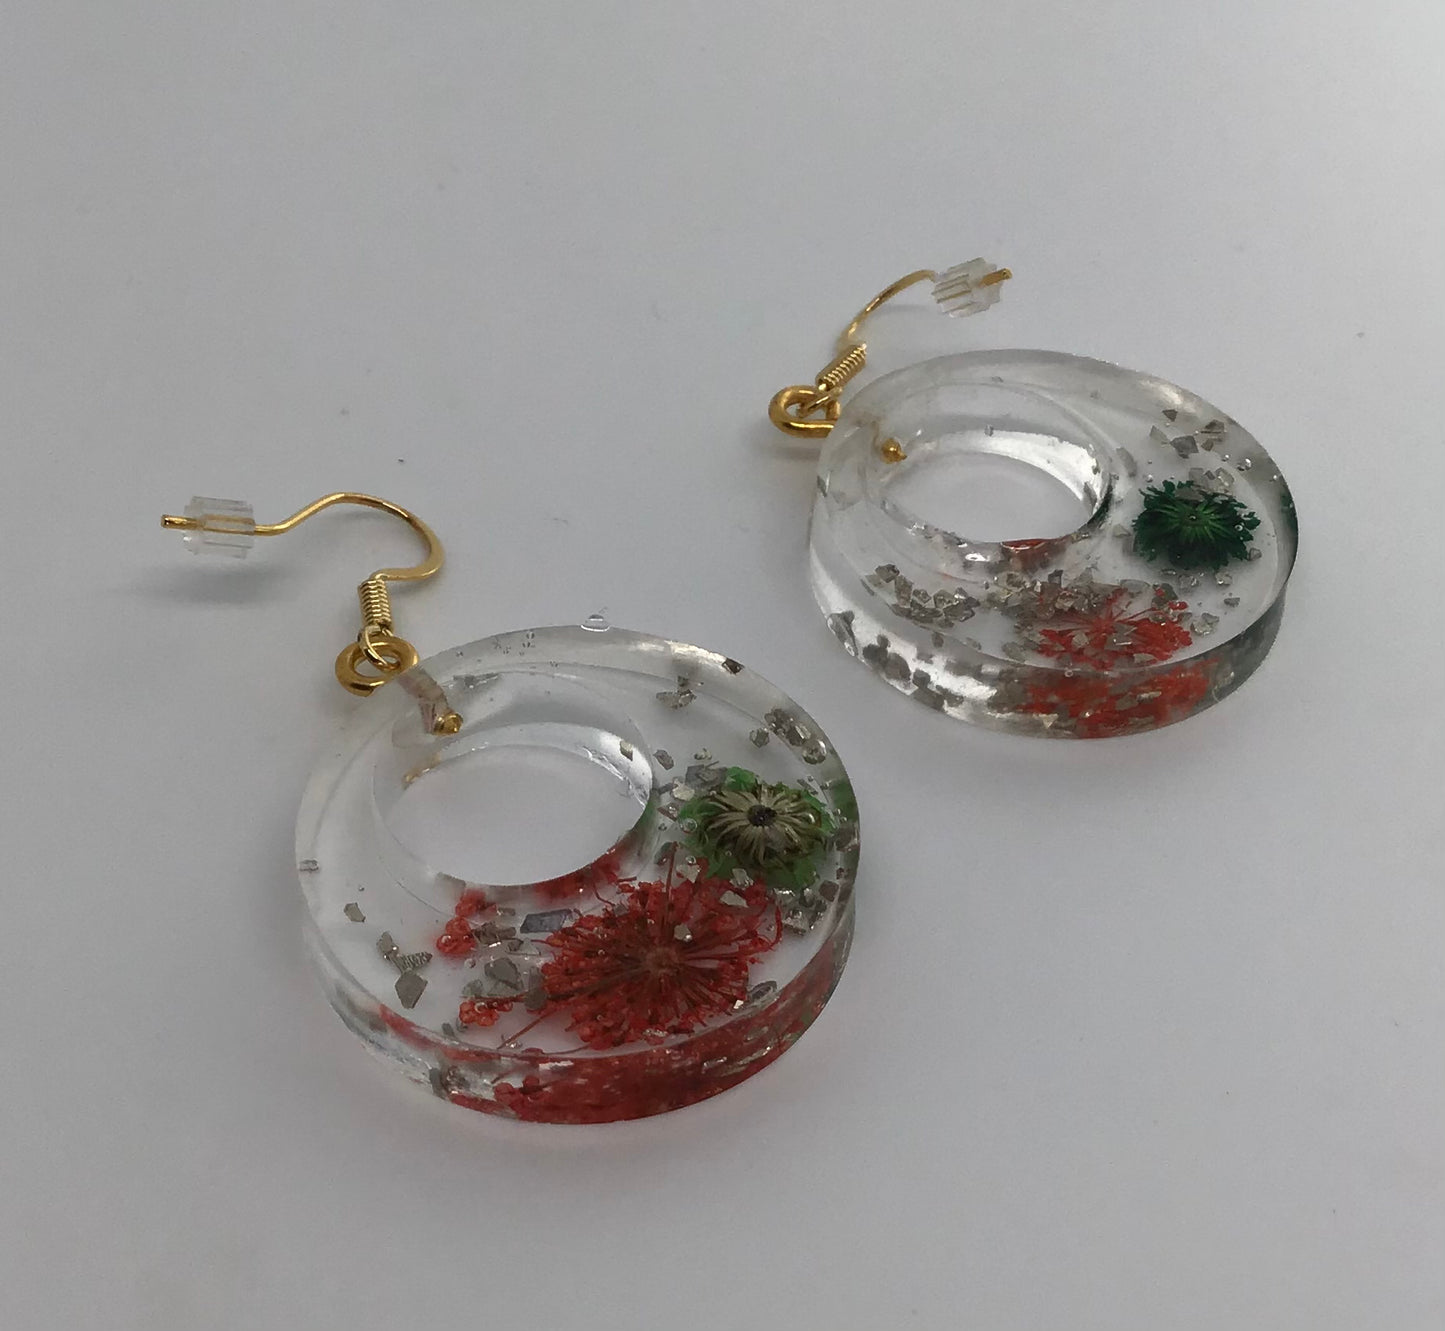 Jessamyn Red & Green Wildflower Earrings